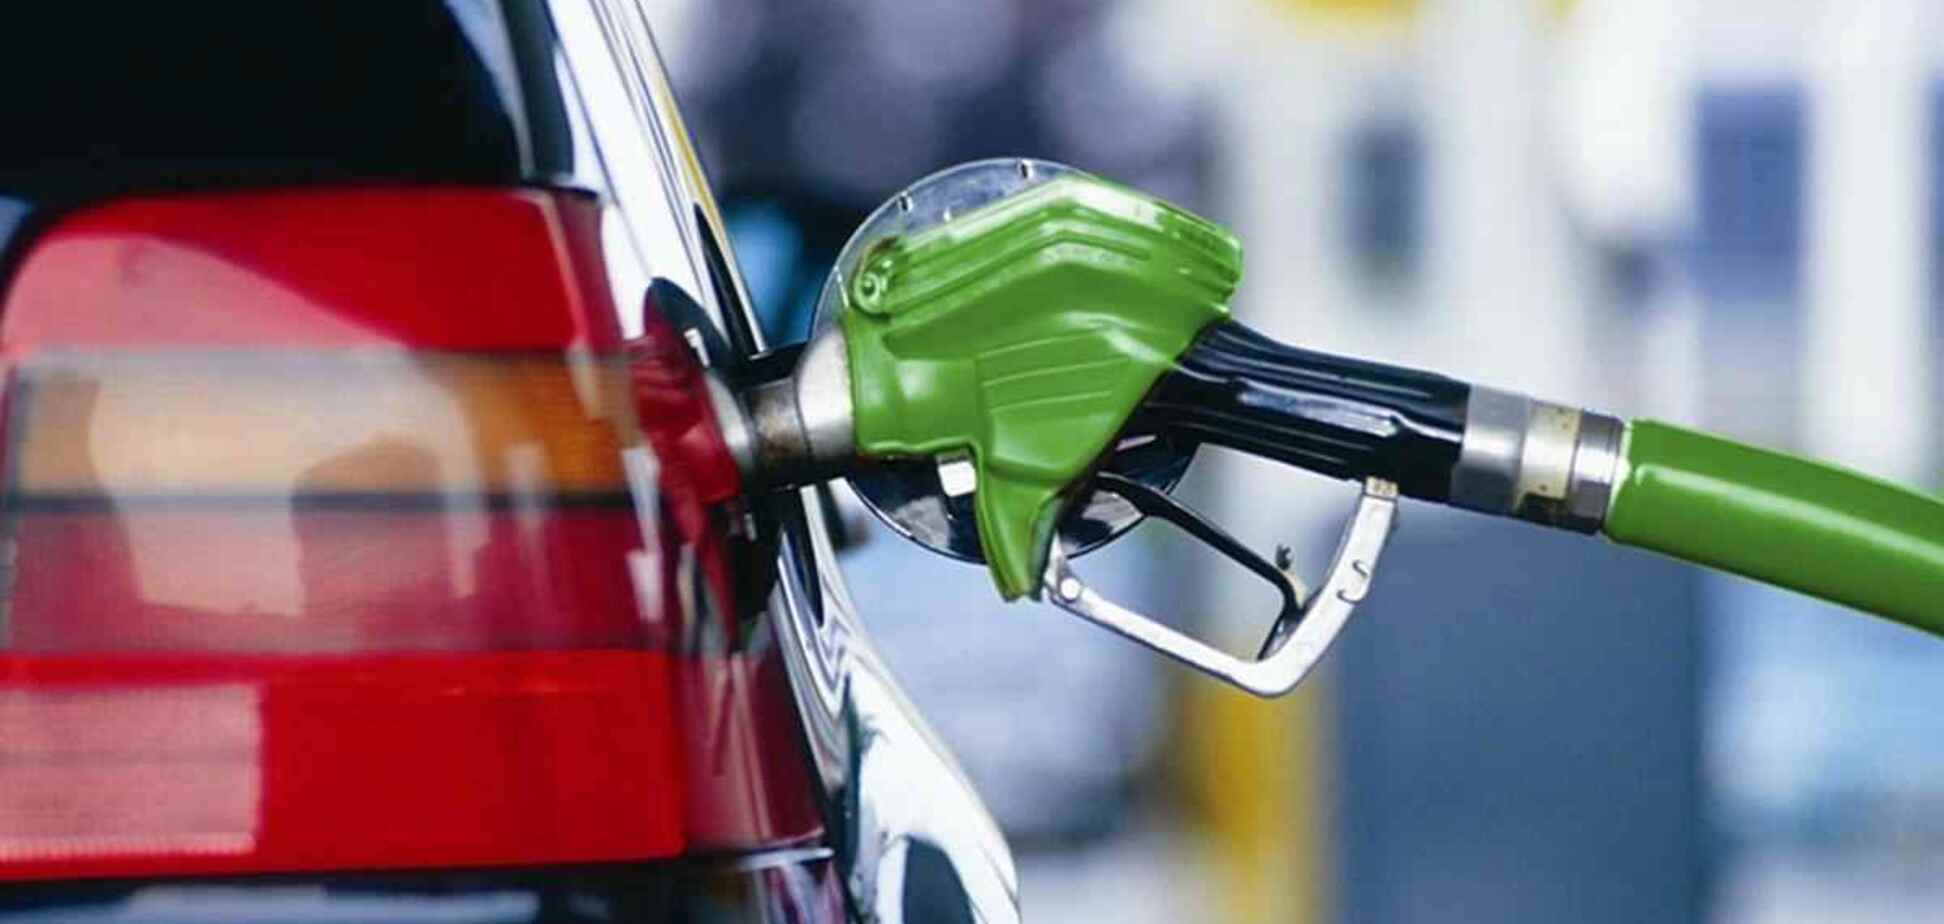 Цены на бензин удалось снизить благодаря формуле 'Роттердам+', – экономист